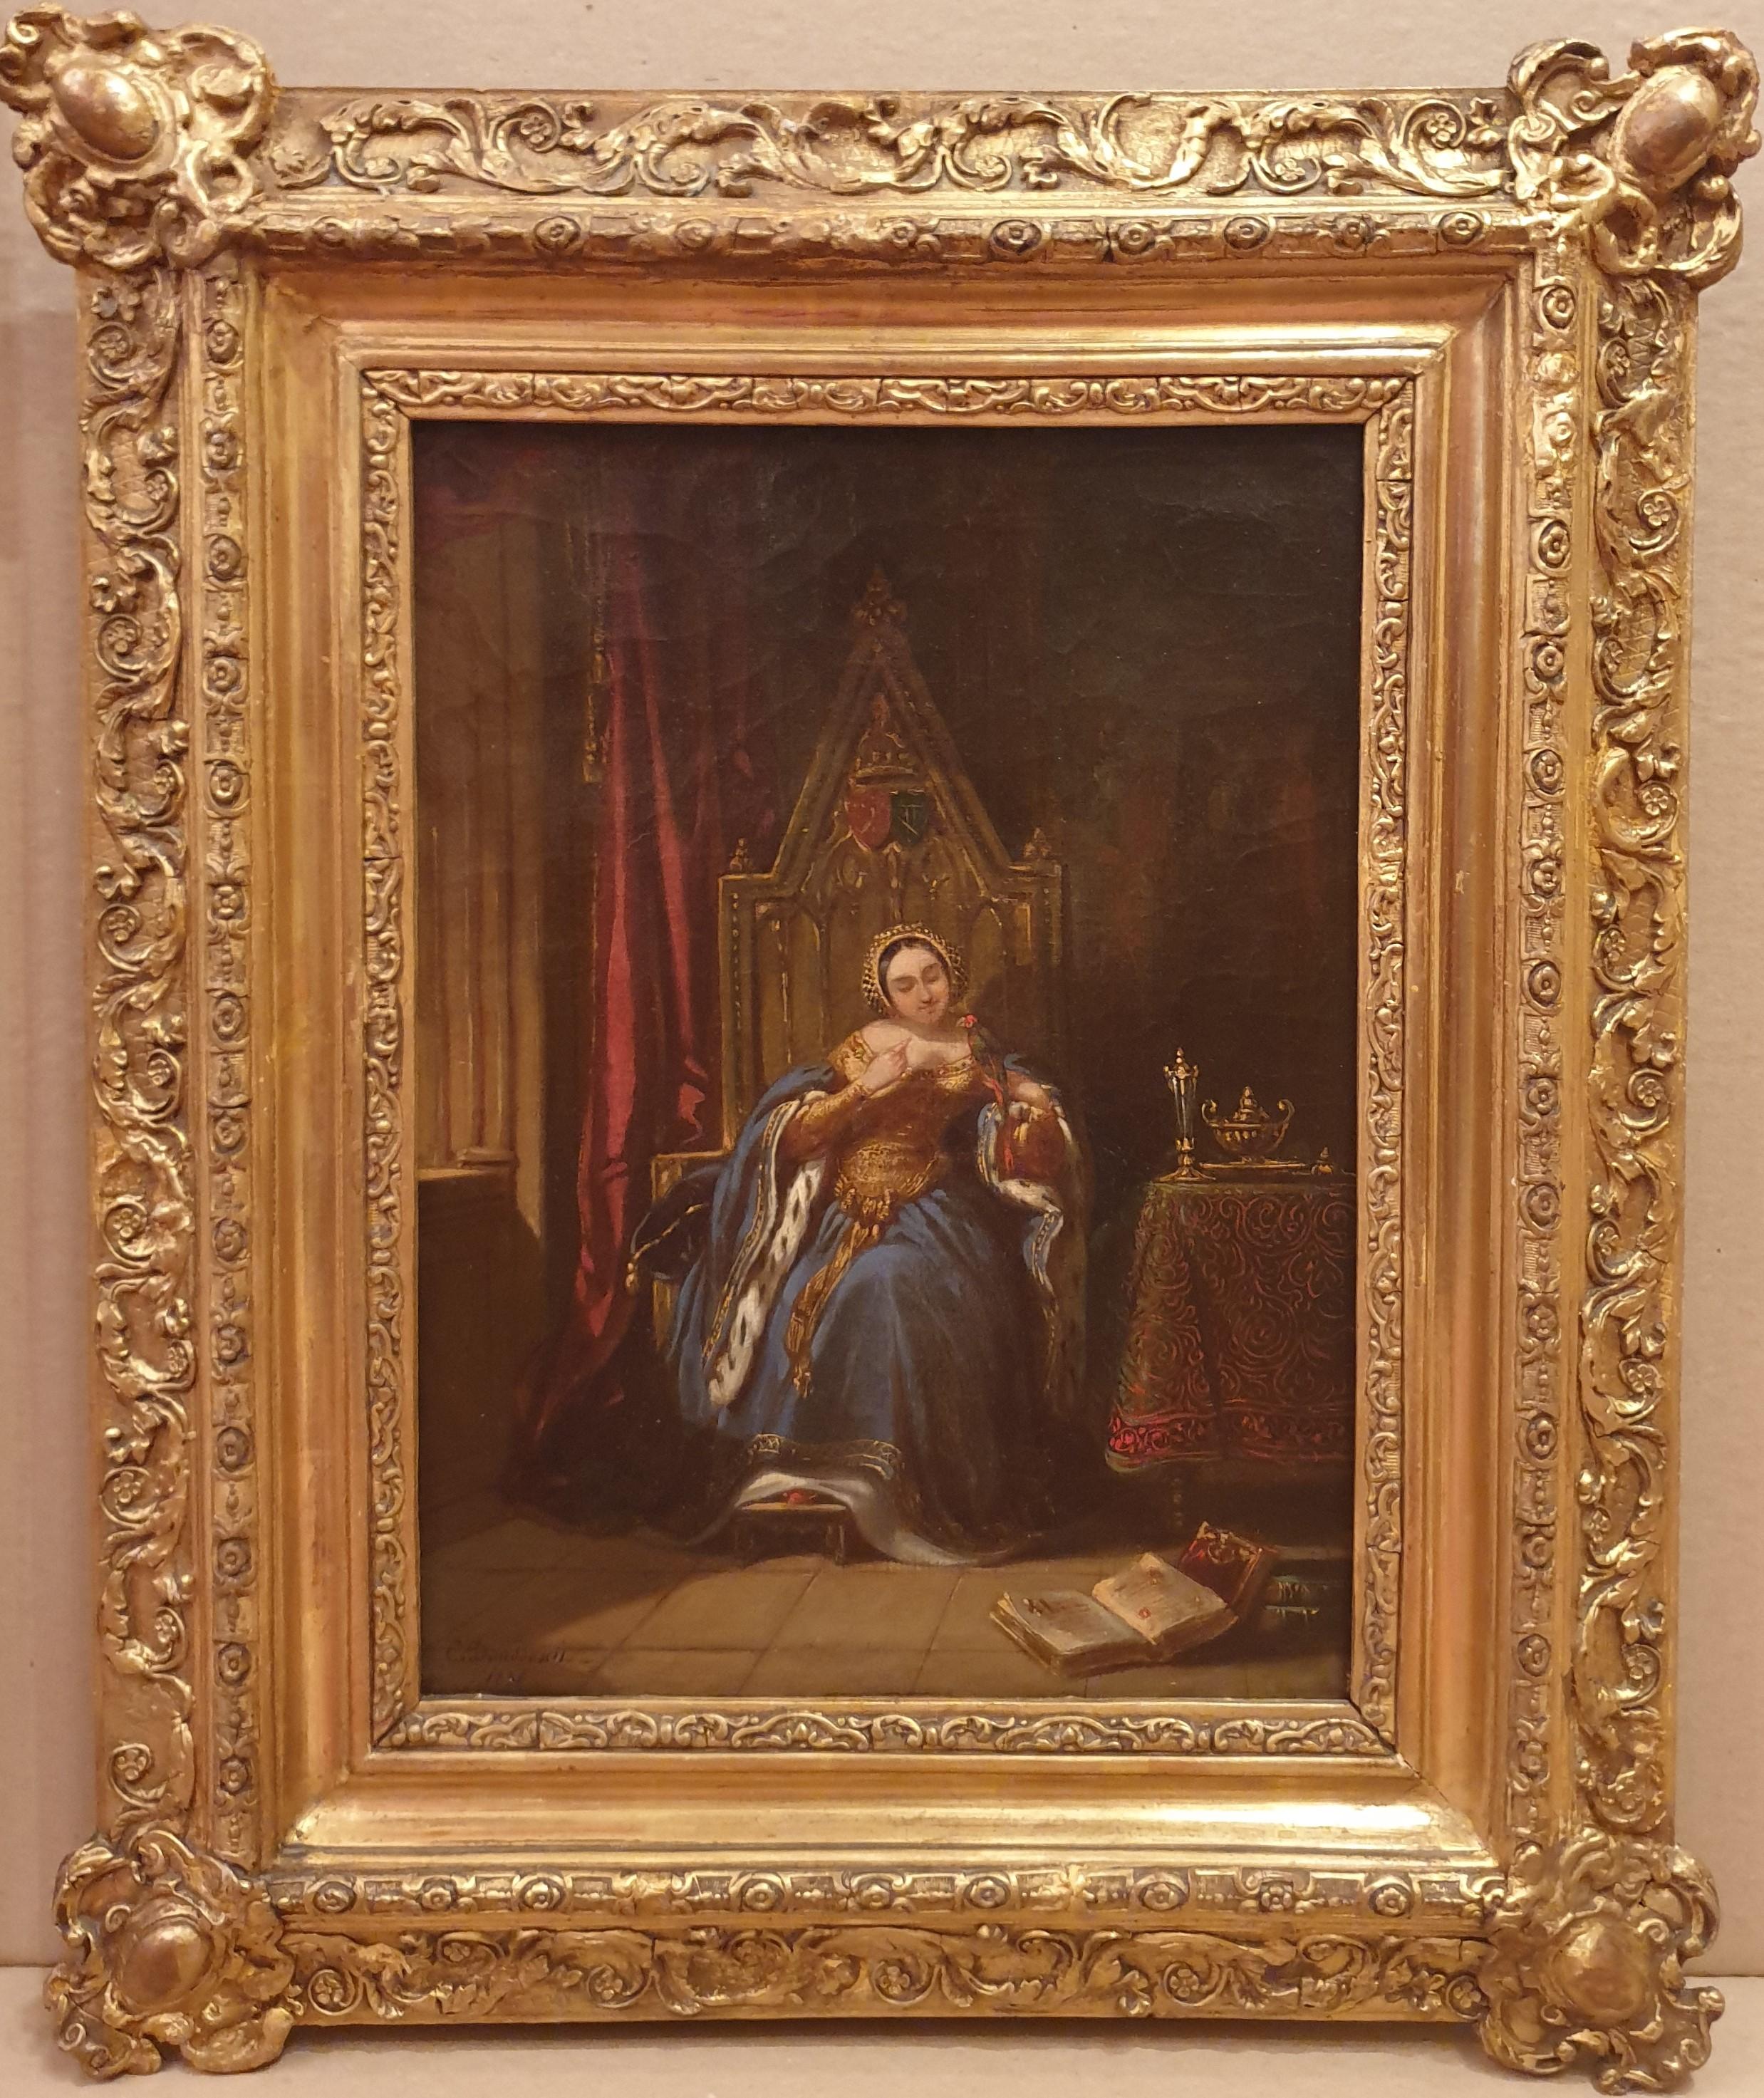 Charles DOUSSAULT 1814 - 1880
Huile sur toile
32,5 cm x 24,5 cm (52 x 41 cm avec le cadre)
Signé et daté en bas à gauche "Ch. Doussault / 1836"
Très beau cadre d'époque en bois doré

Charles Doussault était un peintre-voyageur orientaliste. Il a